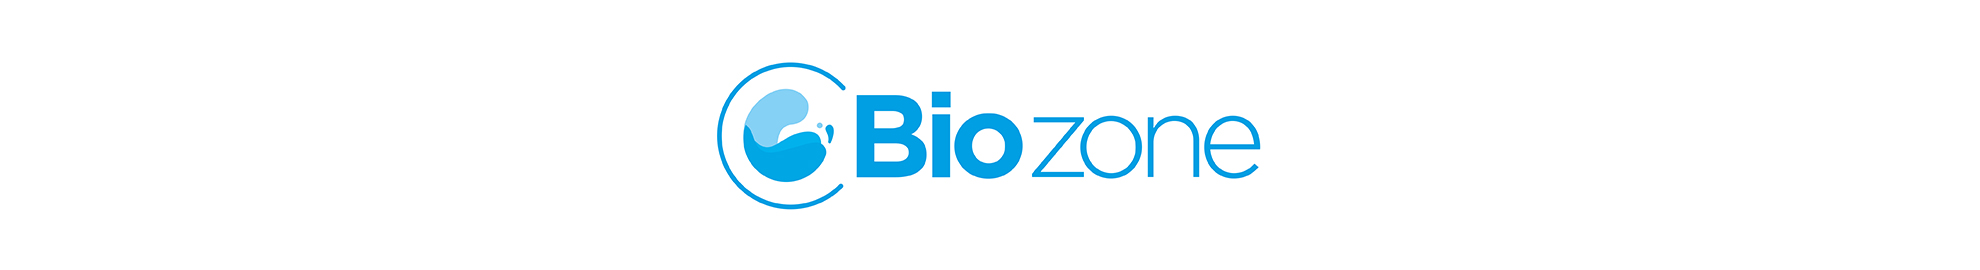 Biozone Tabs